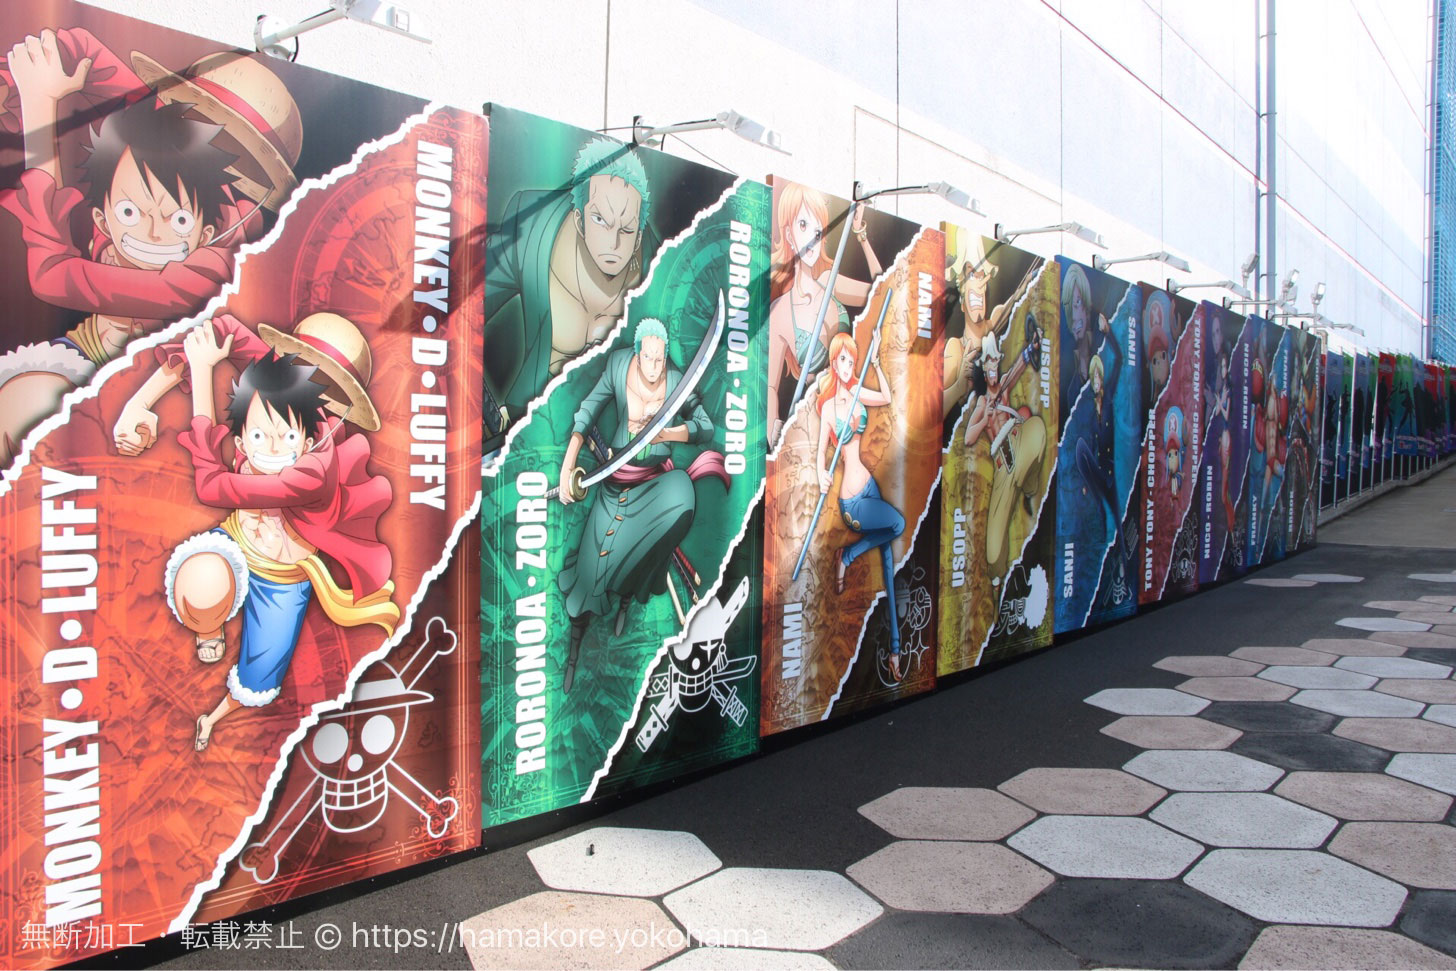 横浜 Dmm Vr Theaterでone Piece 完全オリジナルストーリーを上映 屋外展示は無料 はまこれ横浜